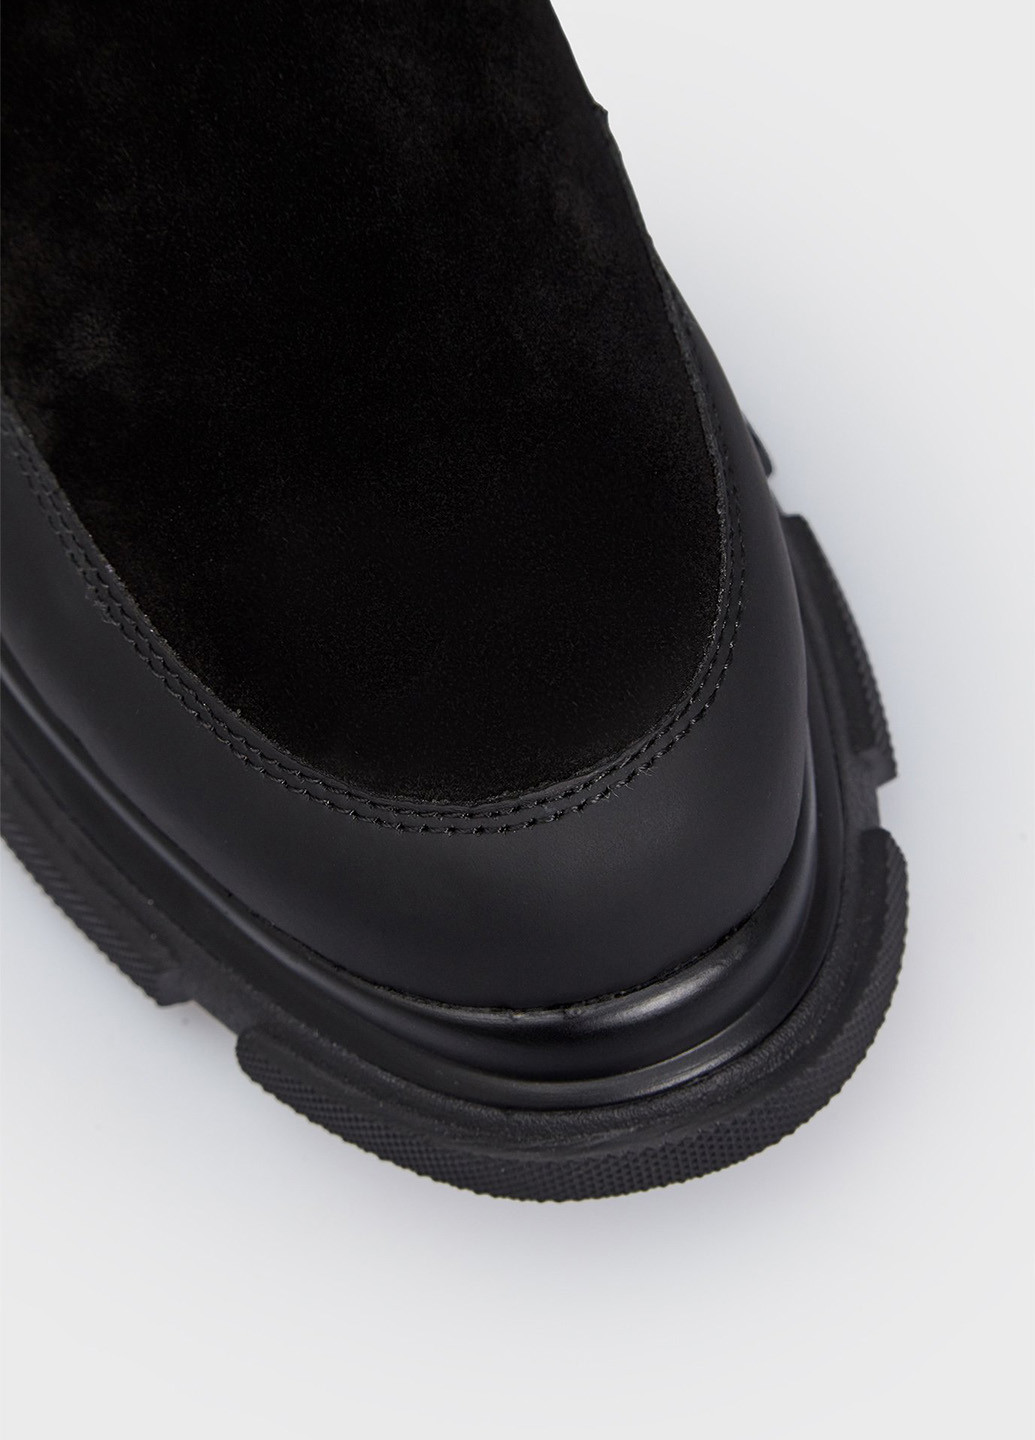 Осенние ботинки челси PRPY с логотипом из натуральной замши, тканевые